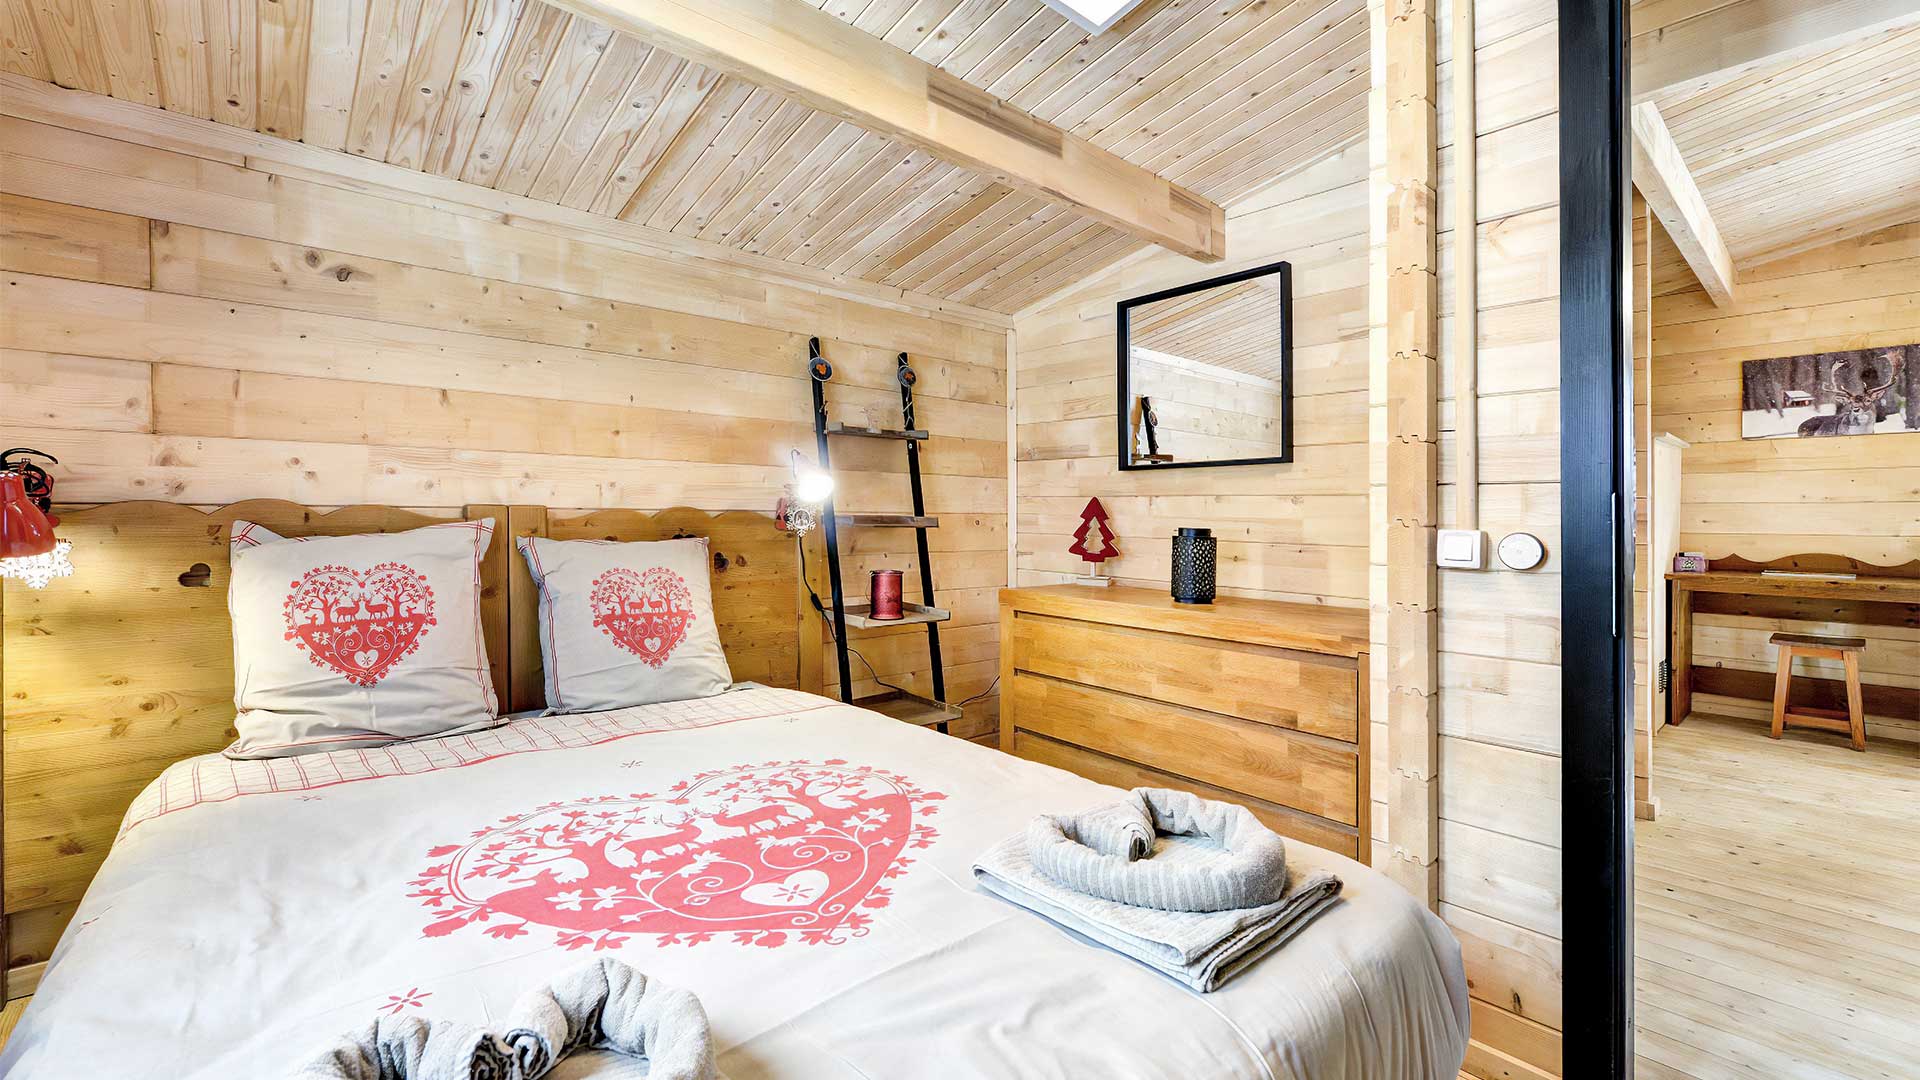 Choucas - Chalet pour 6 personnes : Chambre lit double - Location de chalet à Briançon